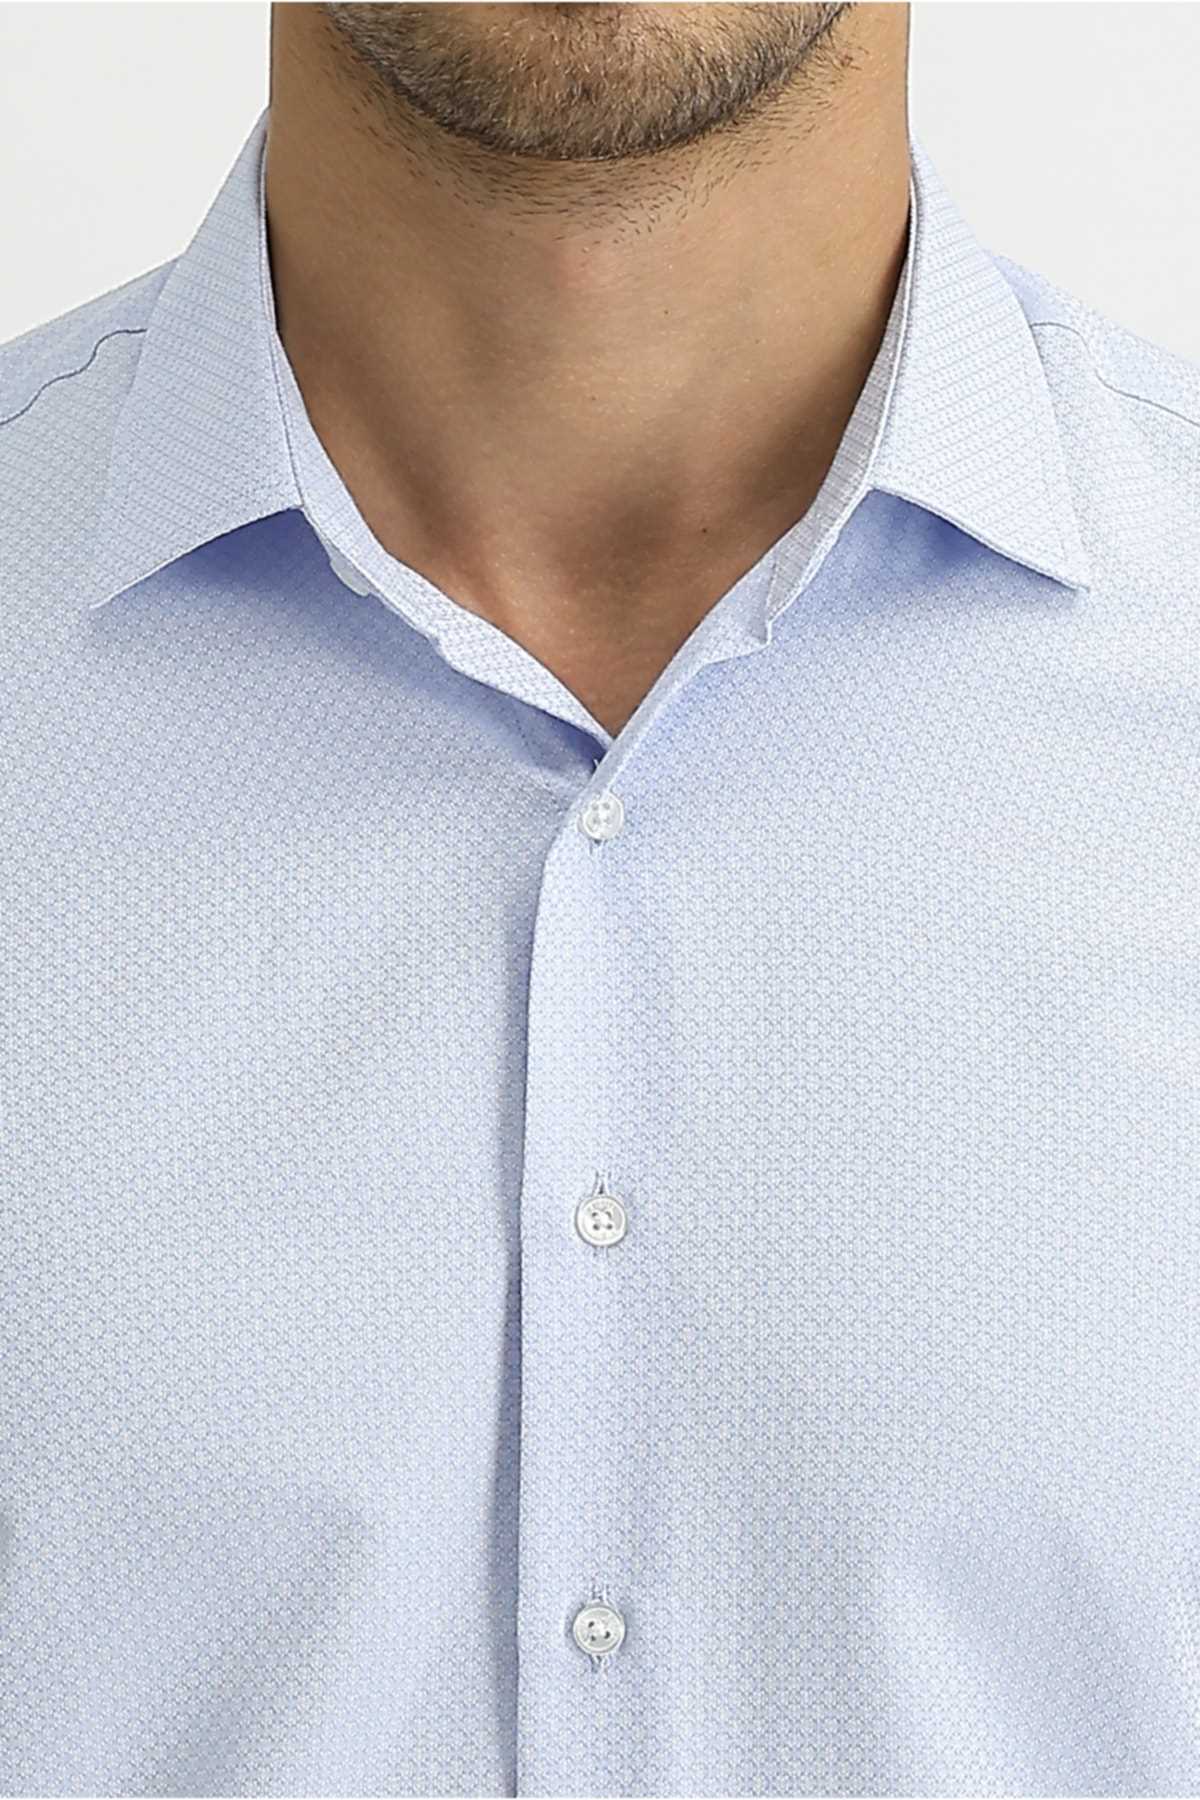 خرید مستقیم پیراهن مجلسی مردانه برند کیگیلی آبی روشن ty84508755